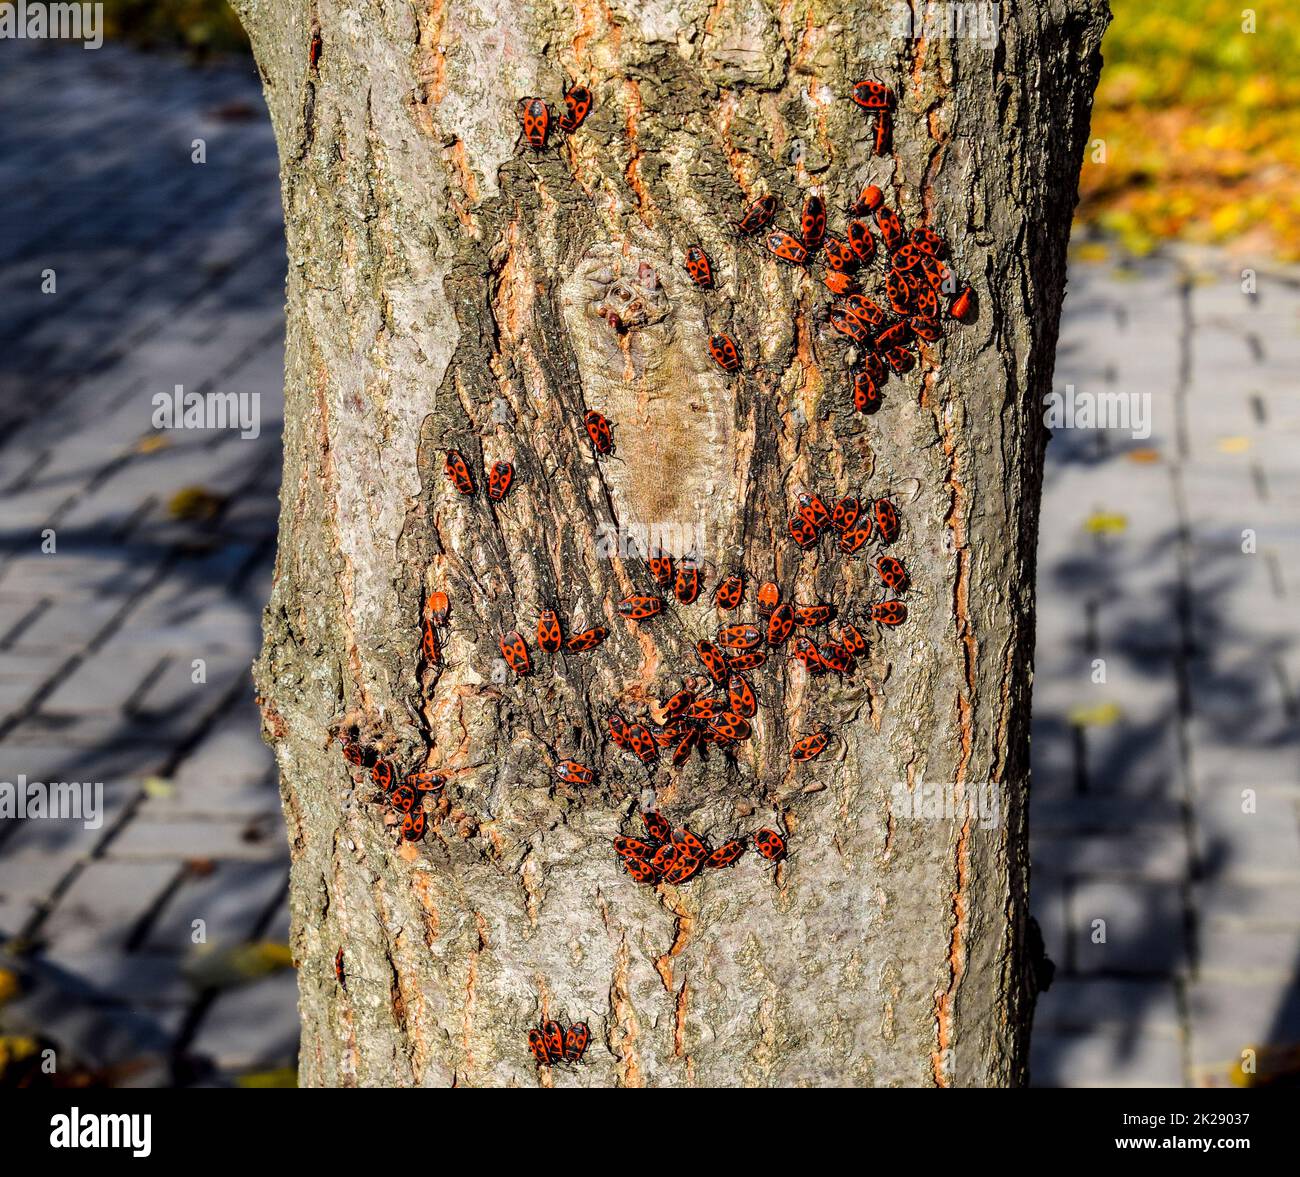 Les insectes rouges se bassent au soleil sur l'écorce des arbres. Des soldats chauds d'automne pour les coléoptères Banque D'Images